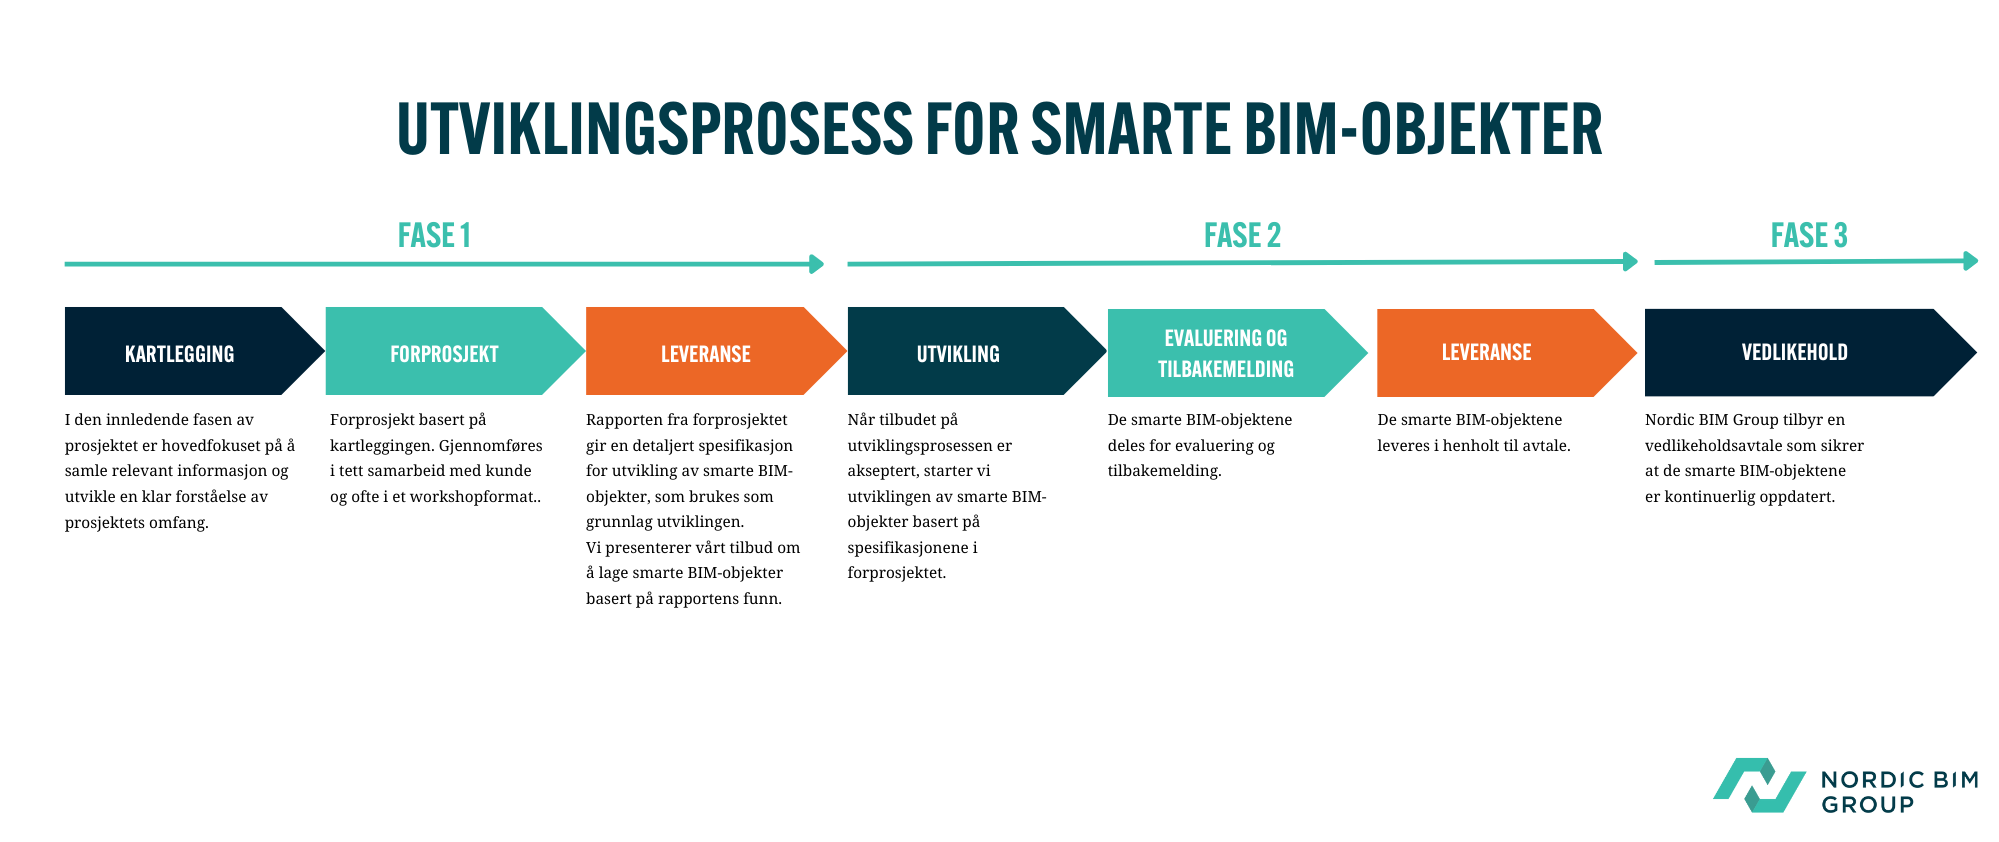 Nordic BIM Groups utviklingsprosess for smarte BIM-objekter